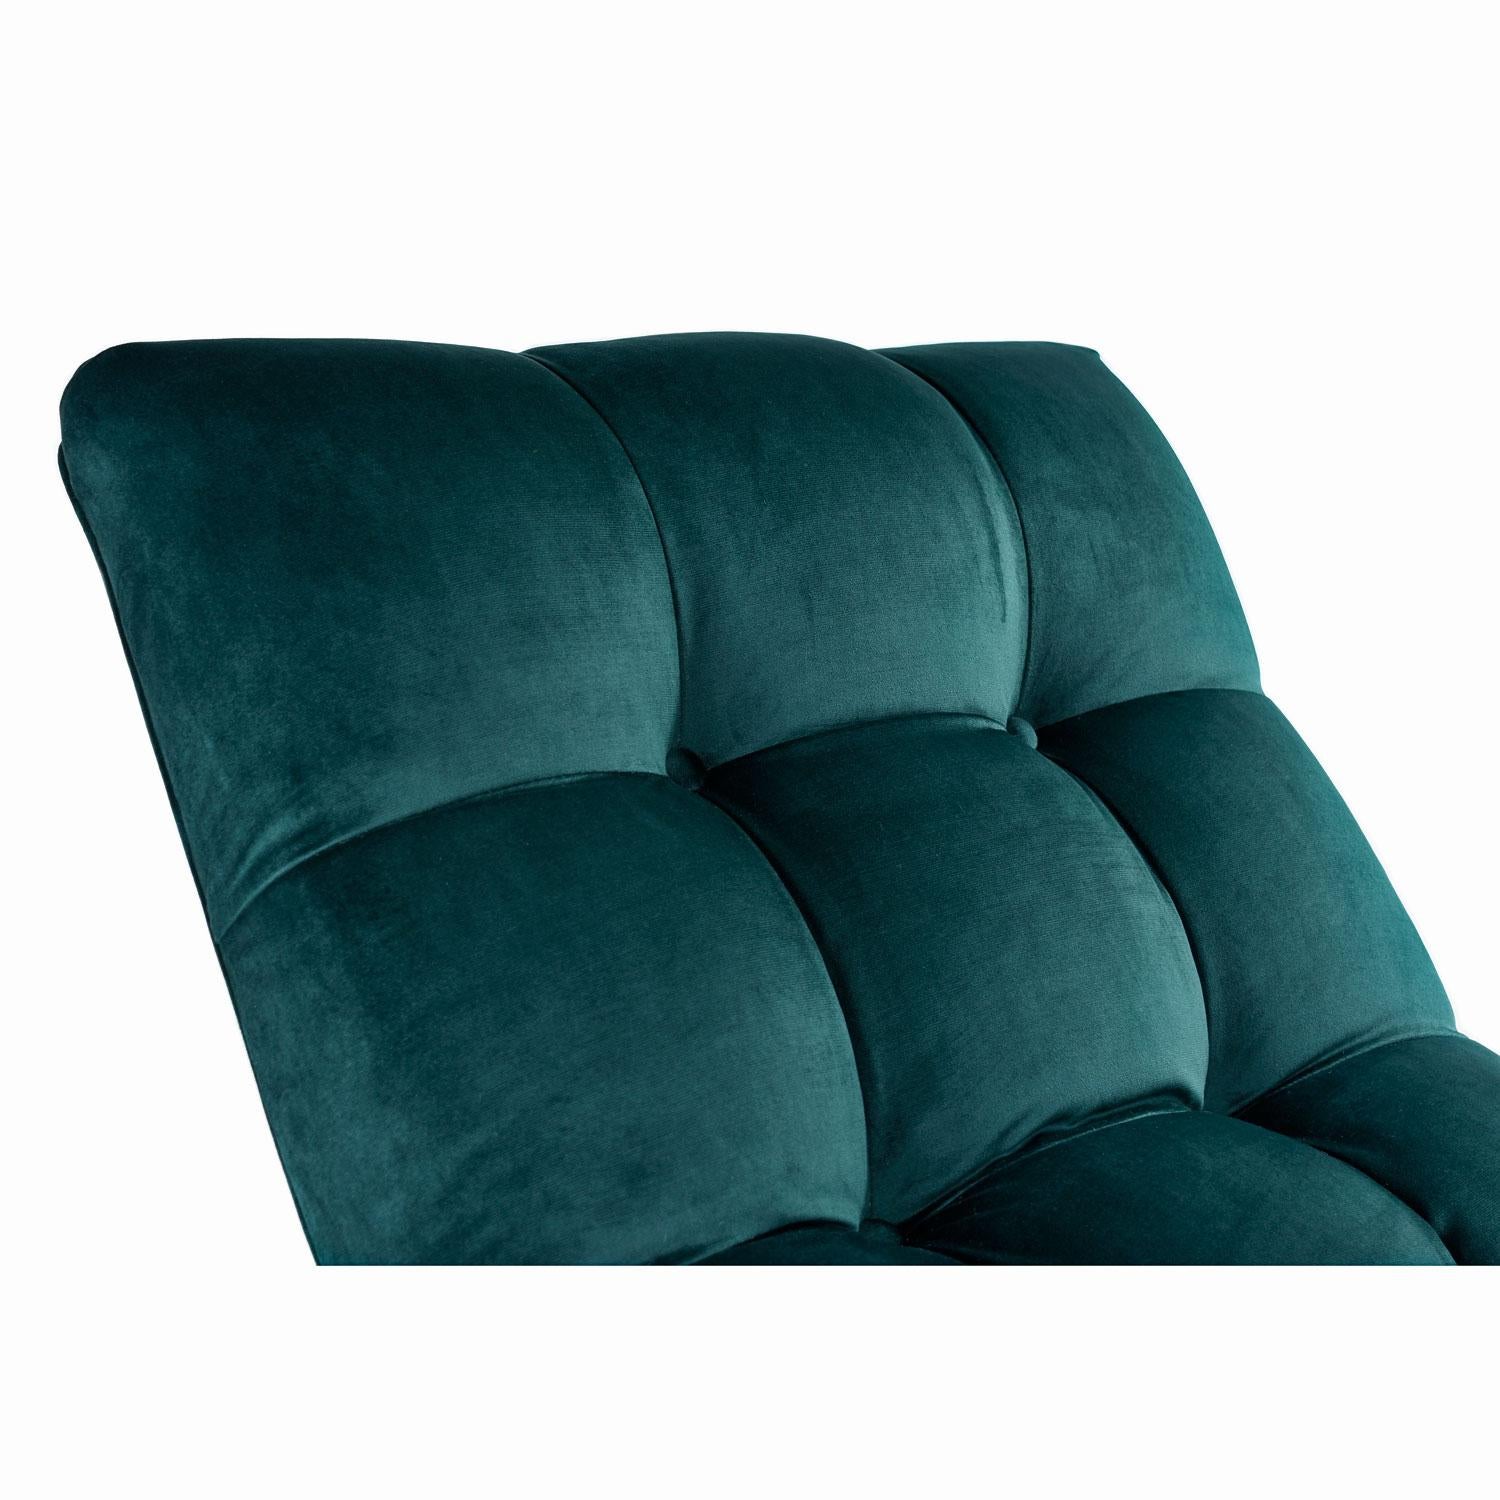 Neu Waldgrüner Samt Milo Baughman Style Wave Chaise Lounge von Carsons (Poliert)